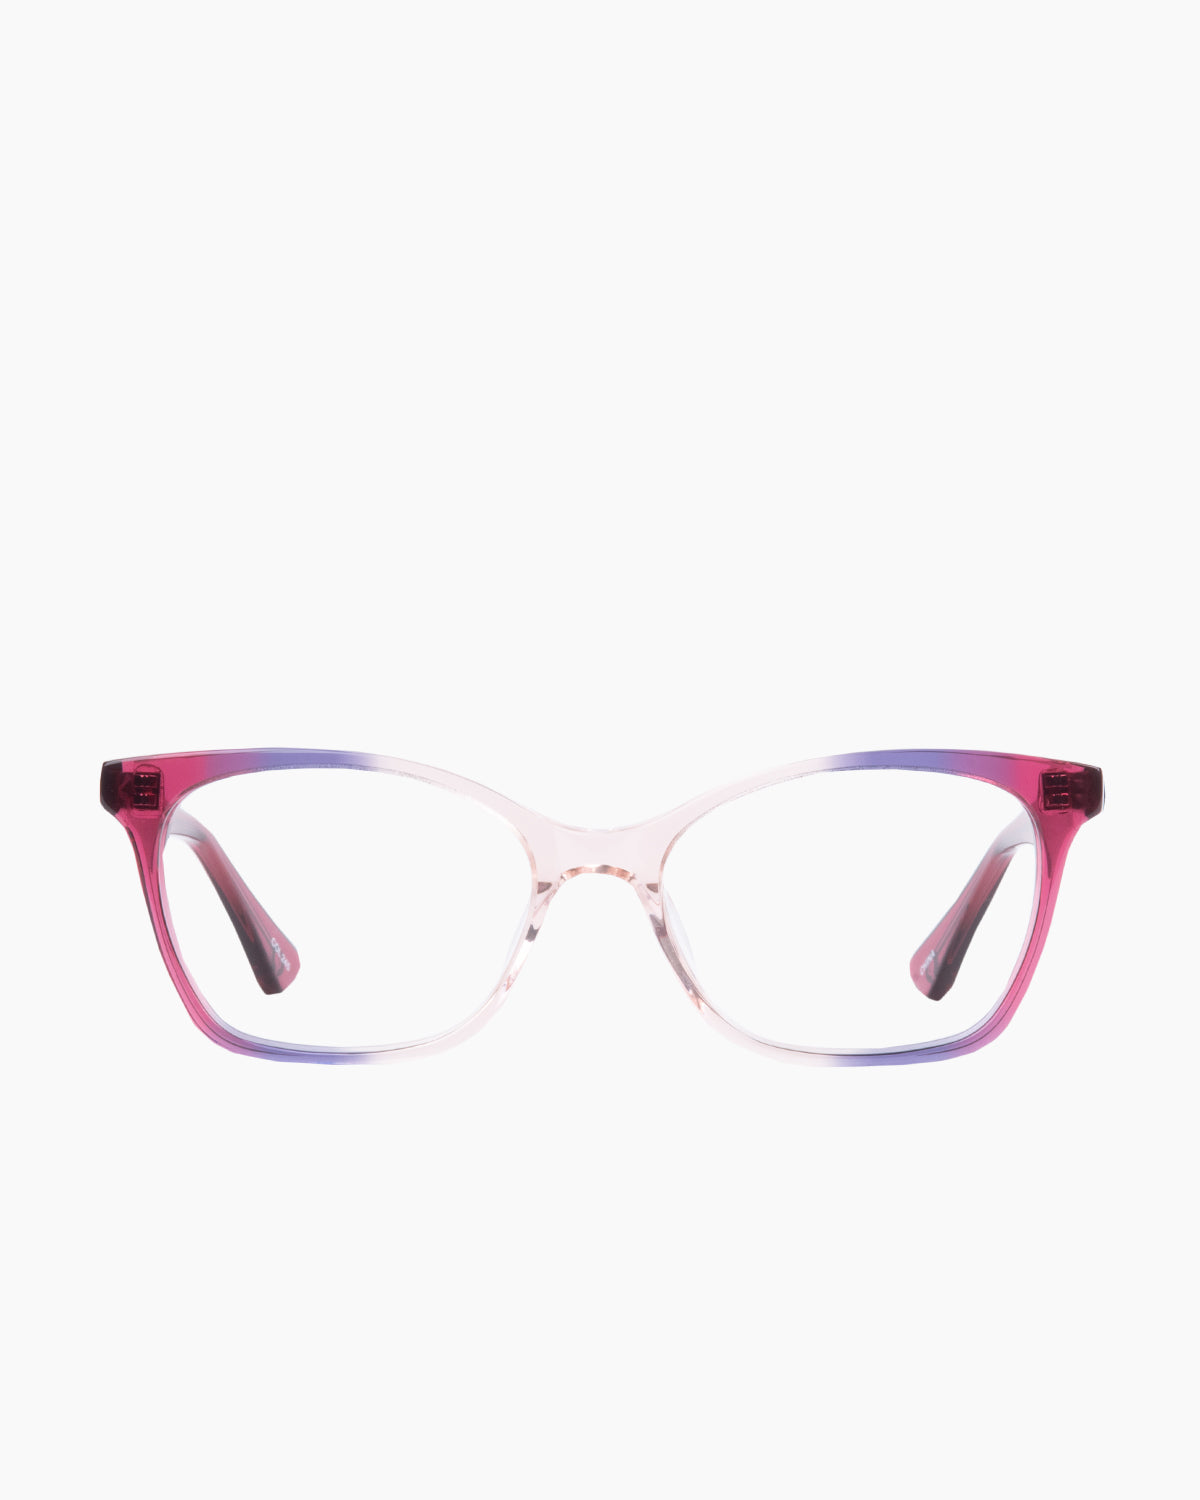 Evolve - Sophia - 245 | glasses bar